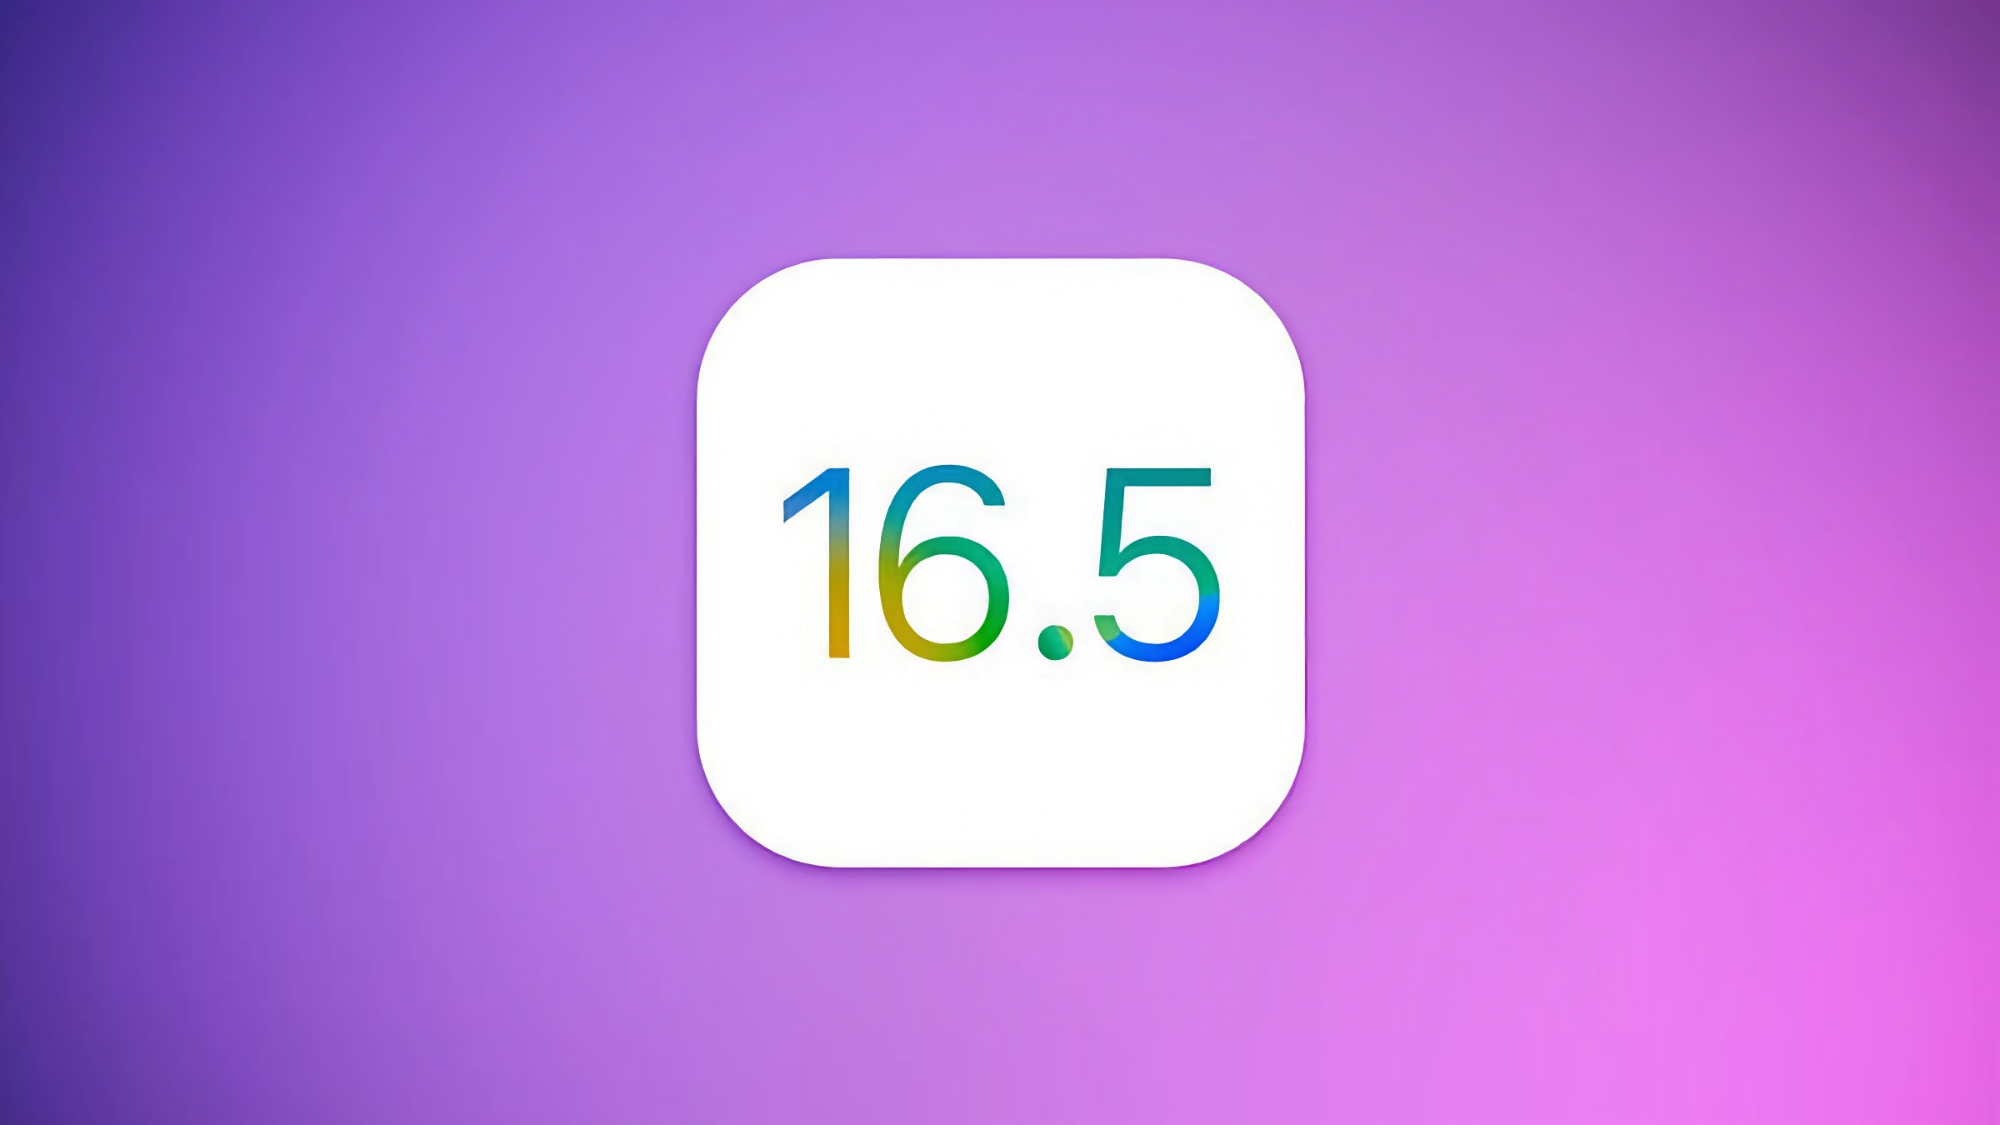 Apple veröffentlicht zweite Beta-Version von iOS 16.5 und iPadOS 16.5